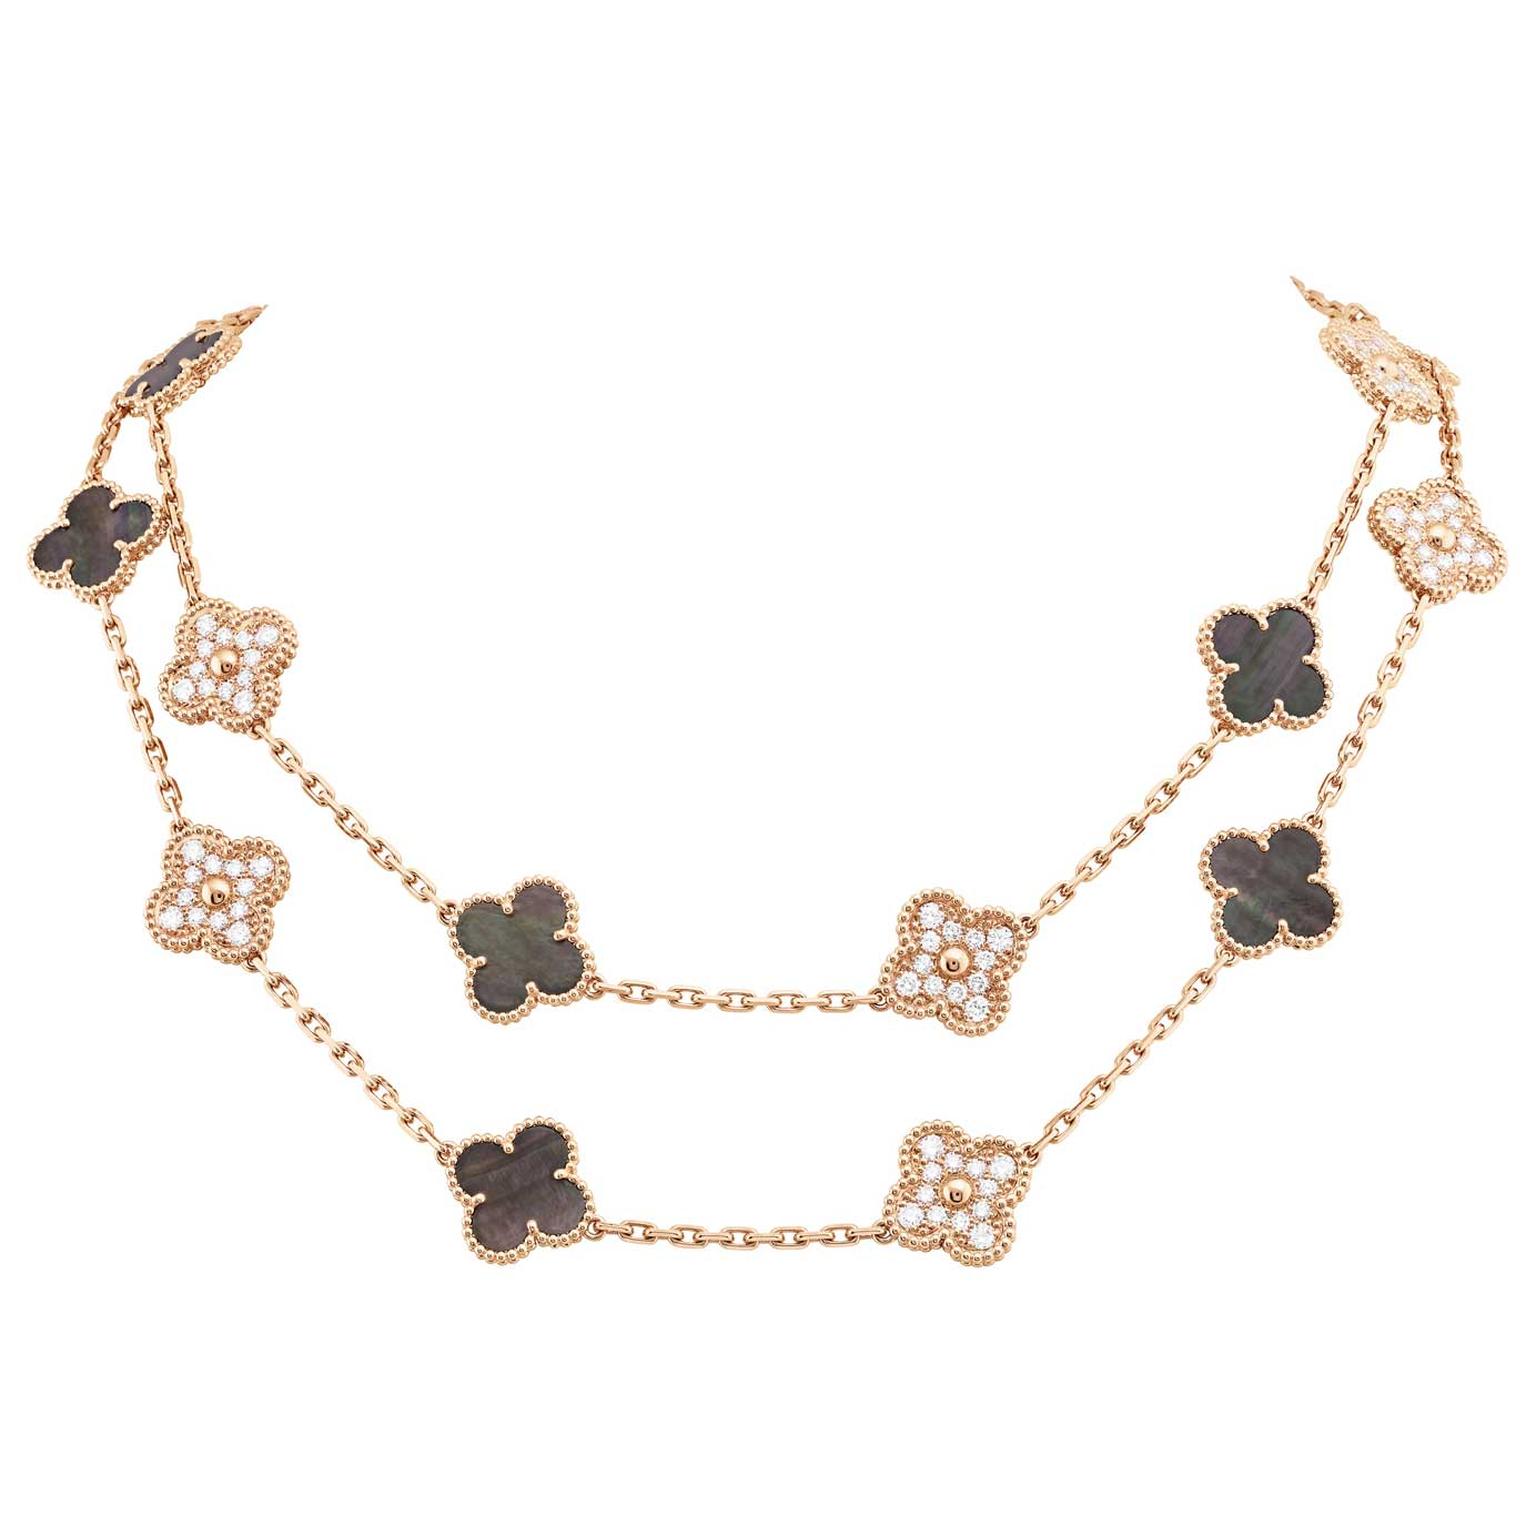 Van Cleef & Arpels Vintage Alhambra Pendant Necklace 18K Rose Gold and Grey  Mother of Pearl Black 963991